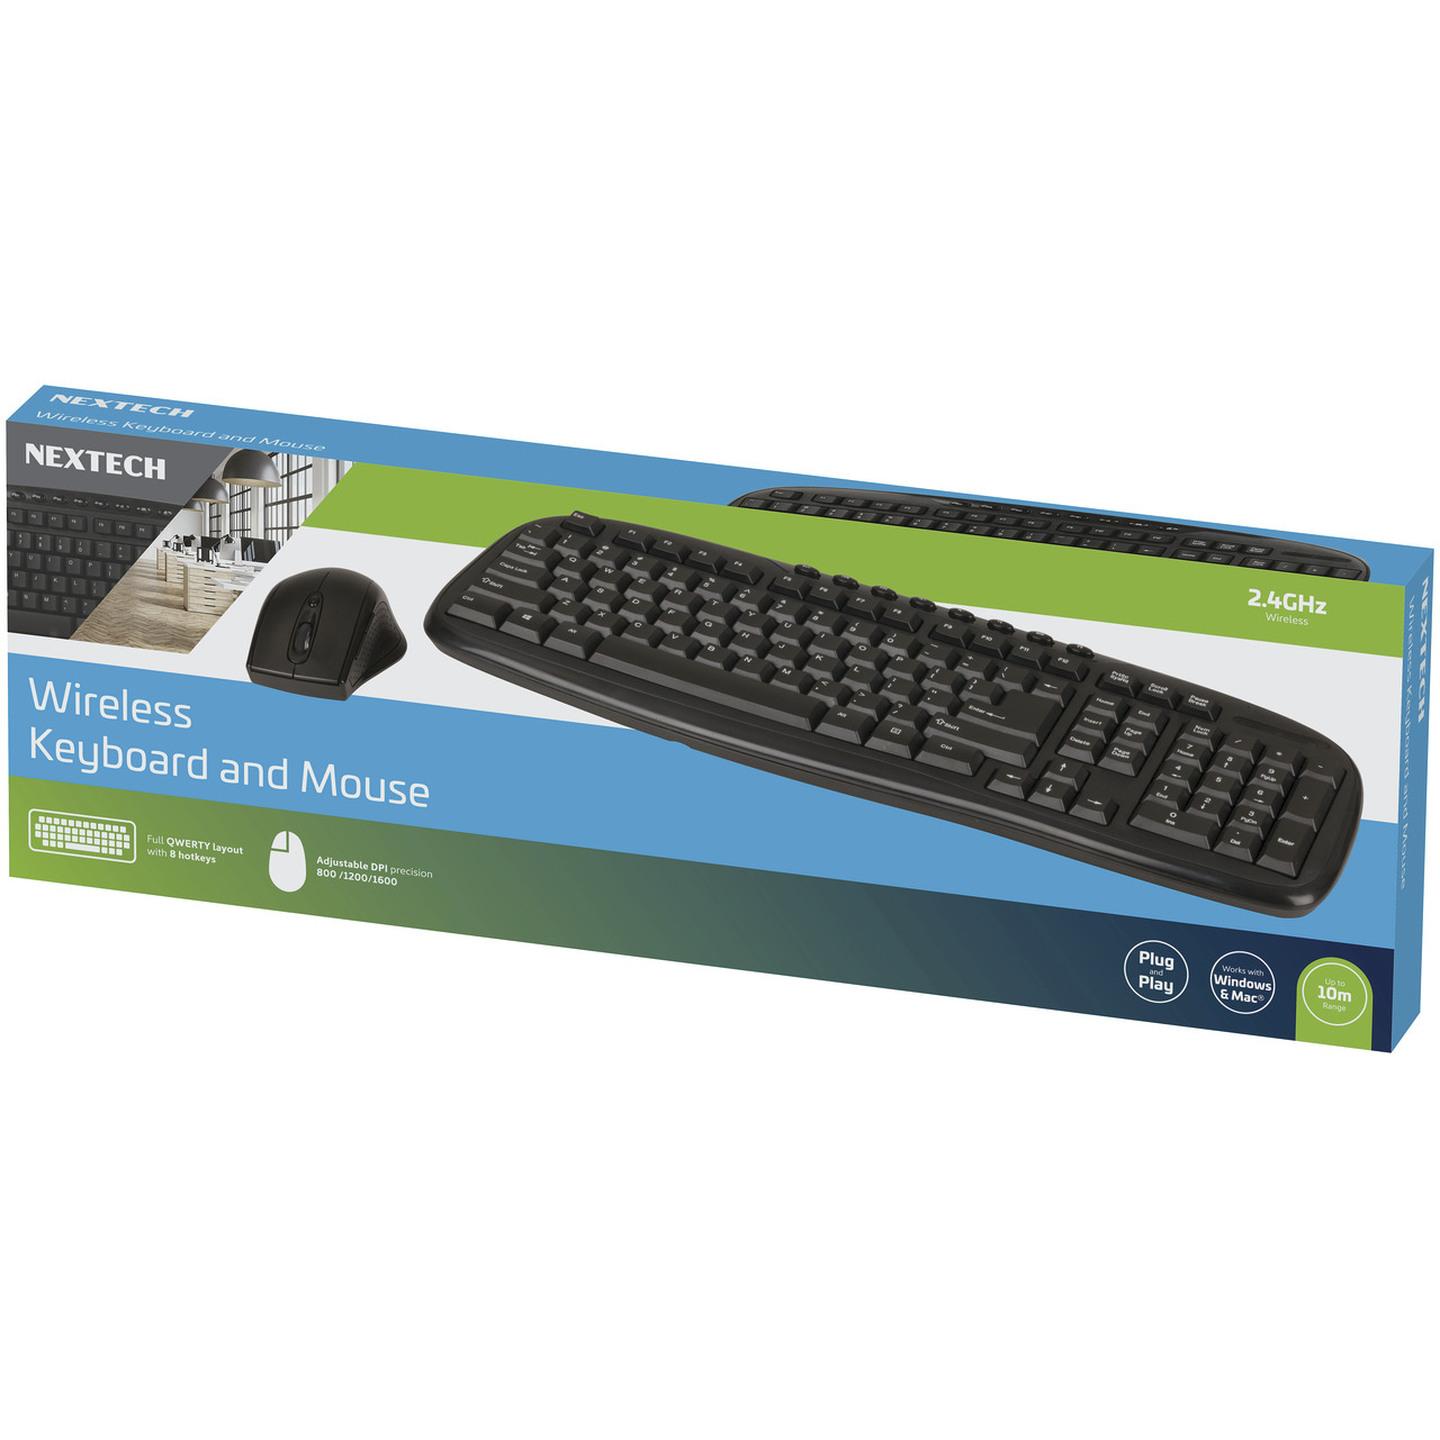 Nextech Wireless USB Keyboard and Mouse